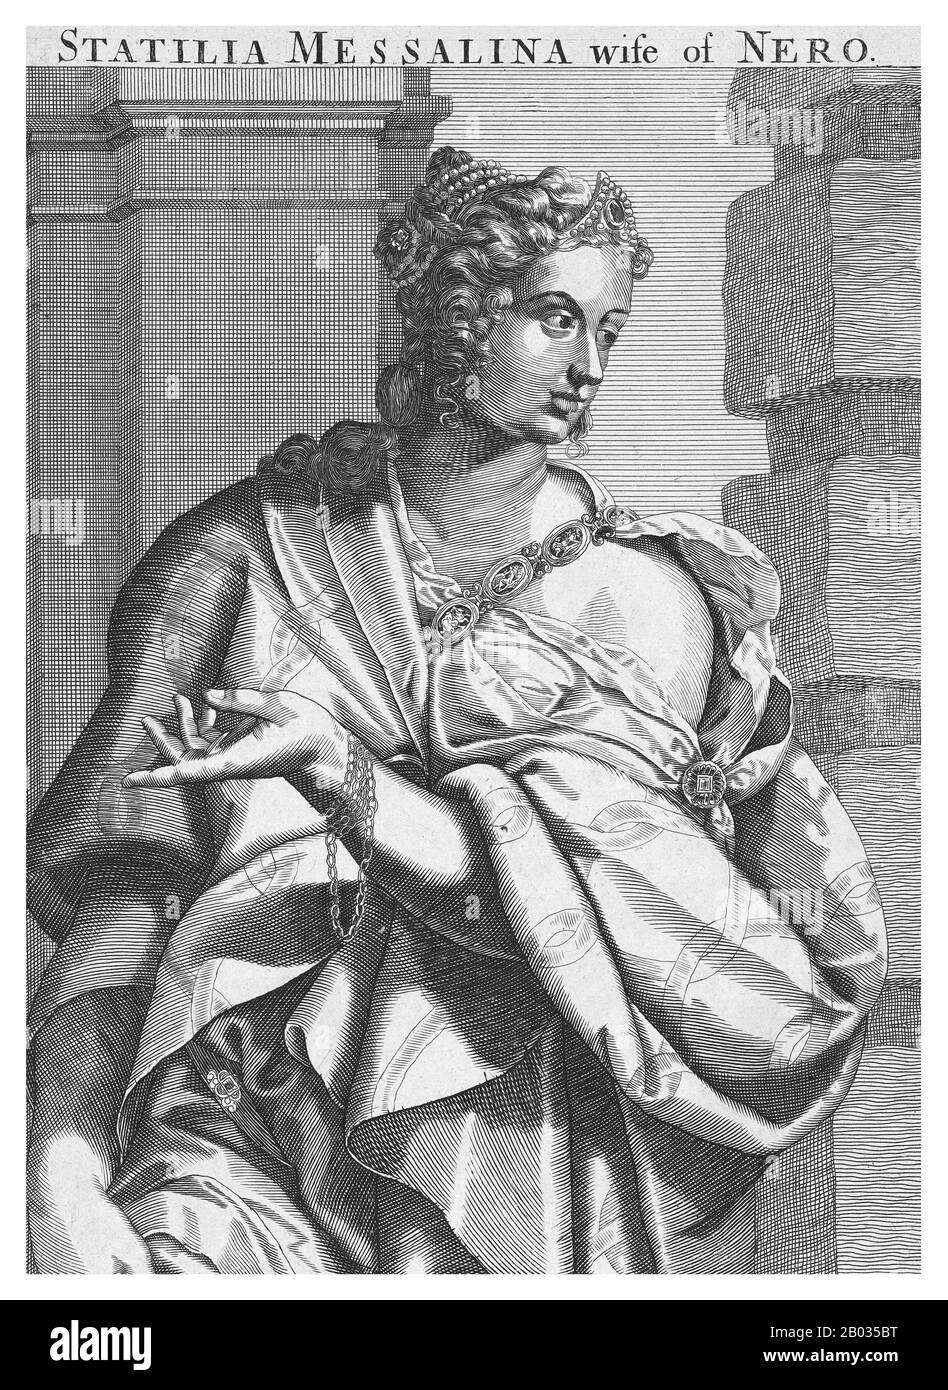 Statilia Messalina (35- nach 68 CE) war eine römische Patrizierfrau, Kaiserin und dritte Frau Neros. Sie war mit dem Konsul Marrcus Julius Vestinus Atticus verheiratet und wurde 65 CE Neros Mätresse. Nach dem Tod von Neros zweiter Frau Poppaea Sabina, möglicherweise an seinen Händen, wurde Vestinus vom Kaiser gezwungen, Selbstmord zu begehen, damit er Statilia heiraten konnte. Sie war eine der wenigen Höflinge, die den Zusammenbruch von Neros Herrschaft überlebten und einige Zeit nach 68 CE starben. Stockfoto